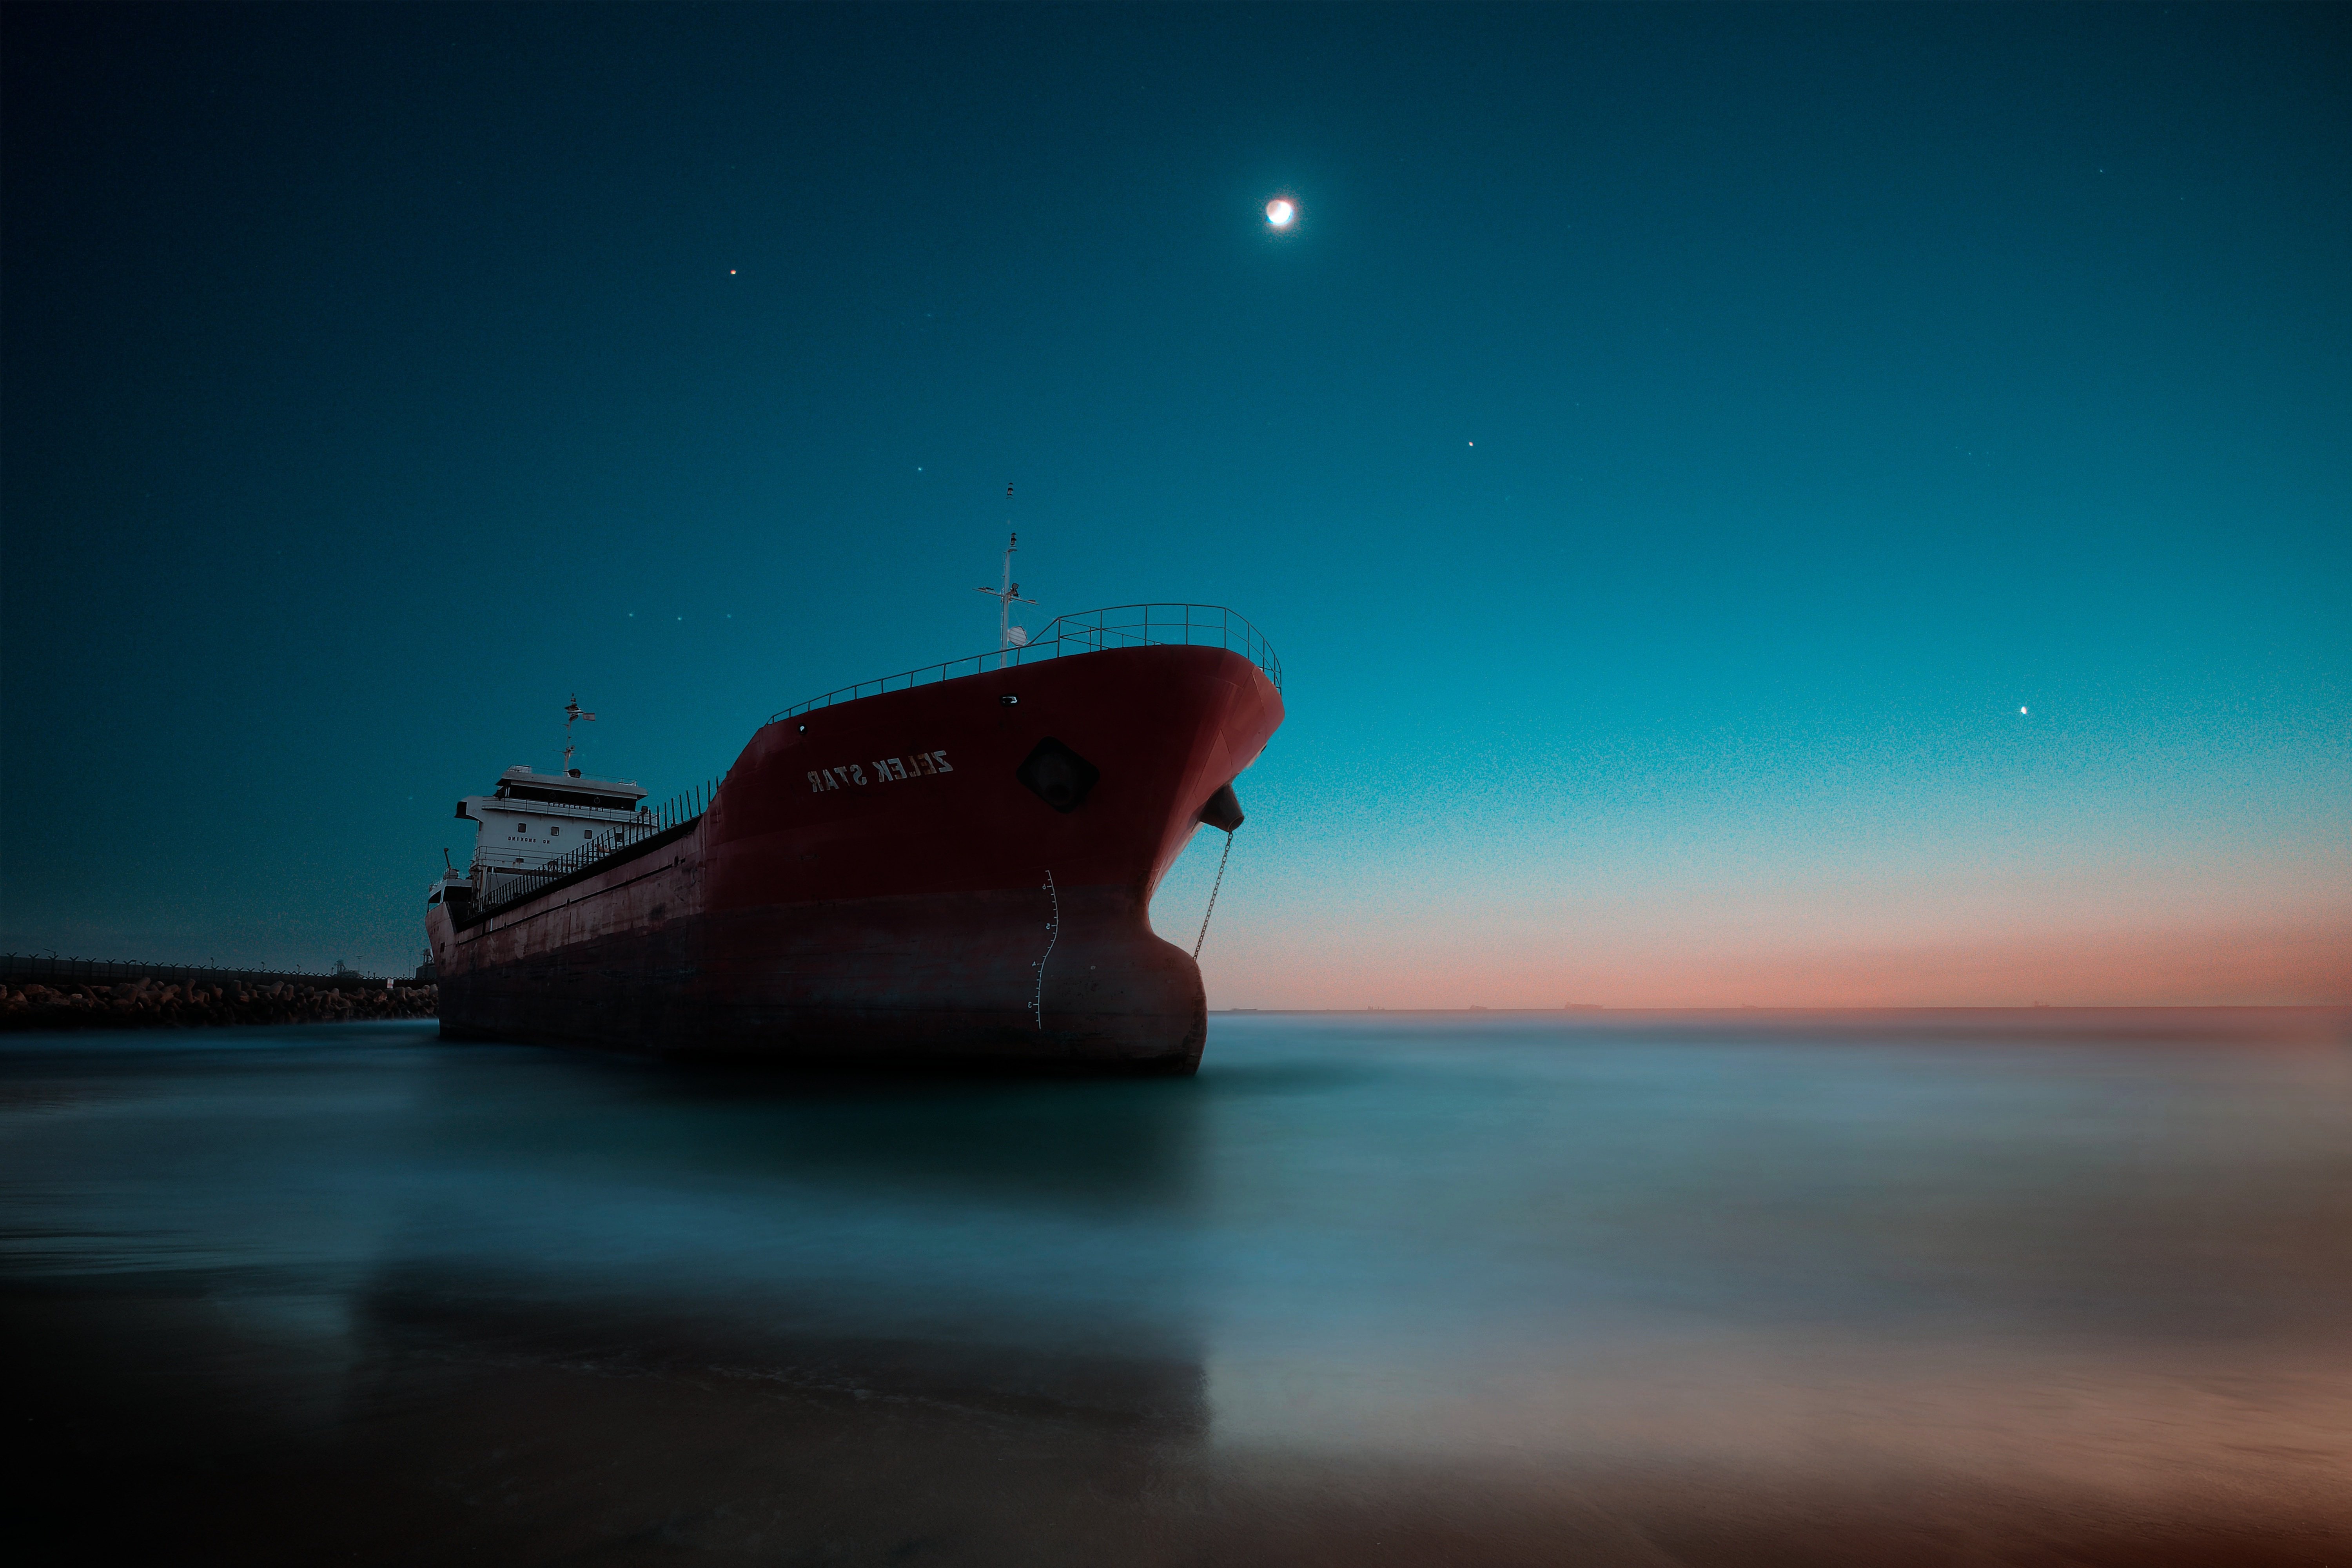 Fondos de pantalla Barco en el mar durante la noche